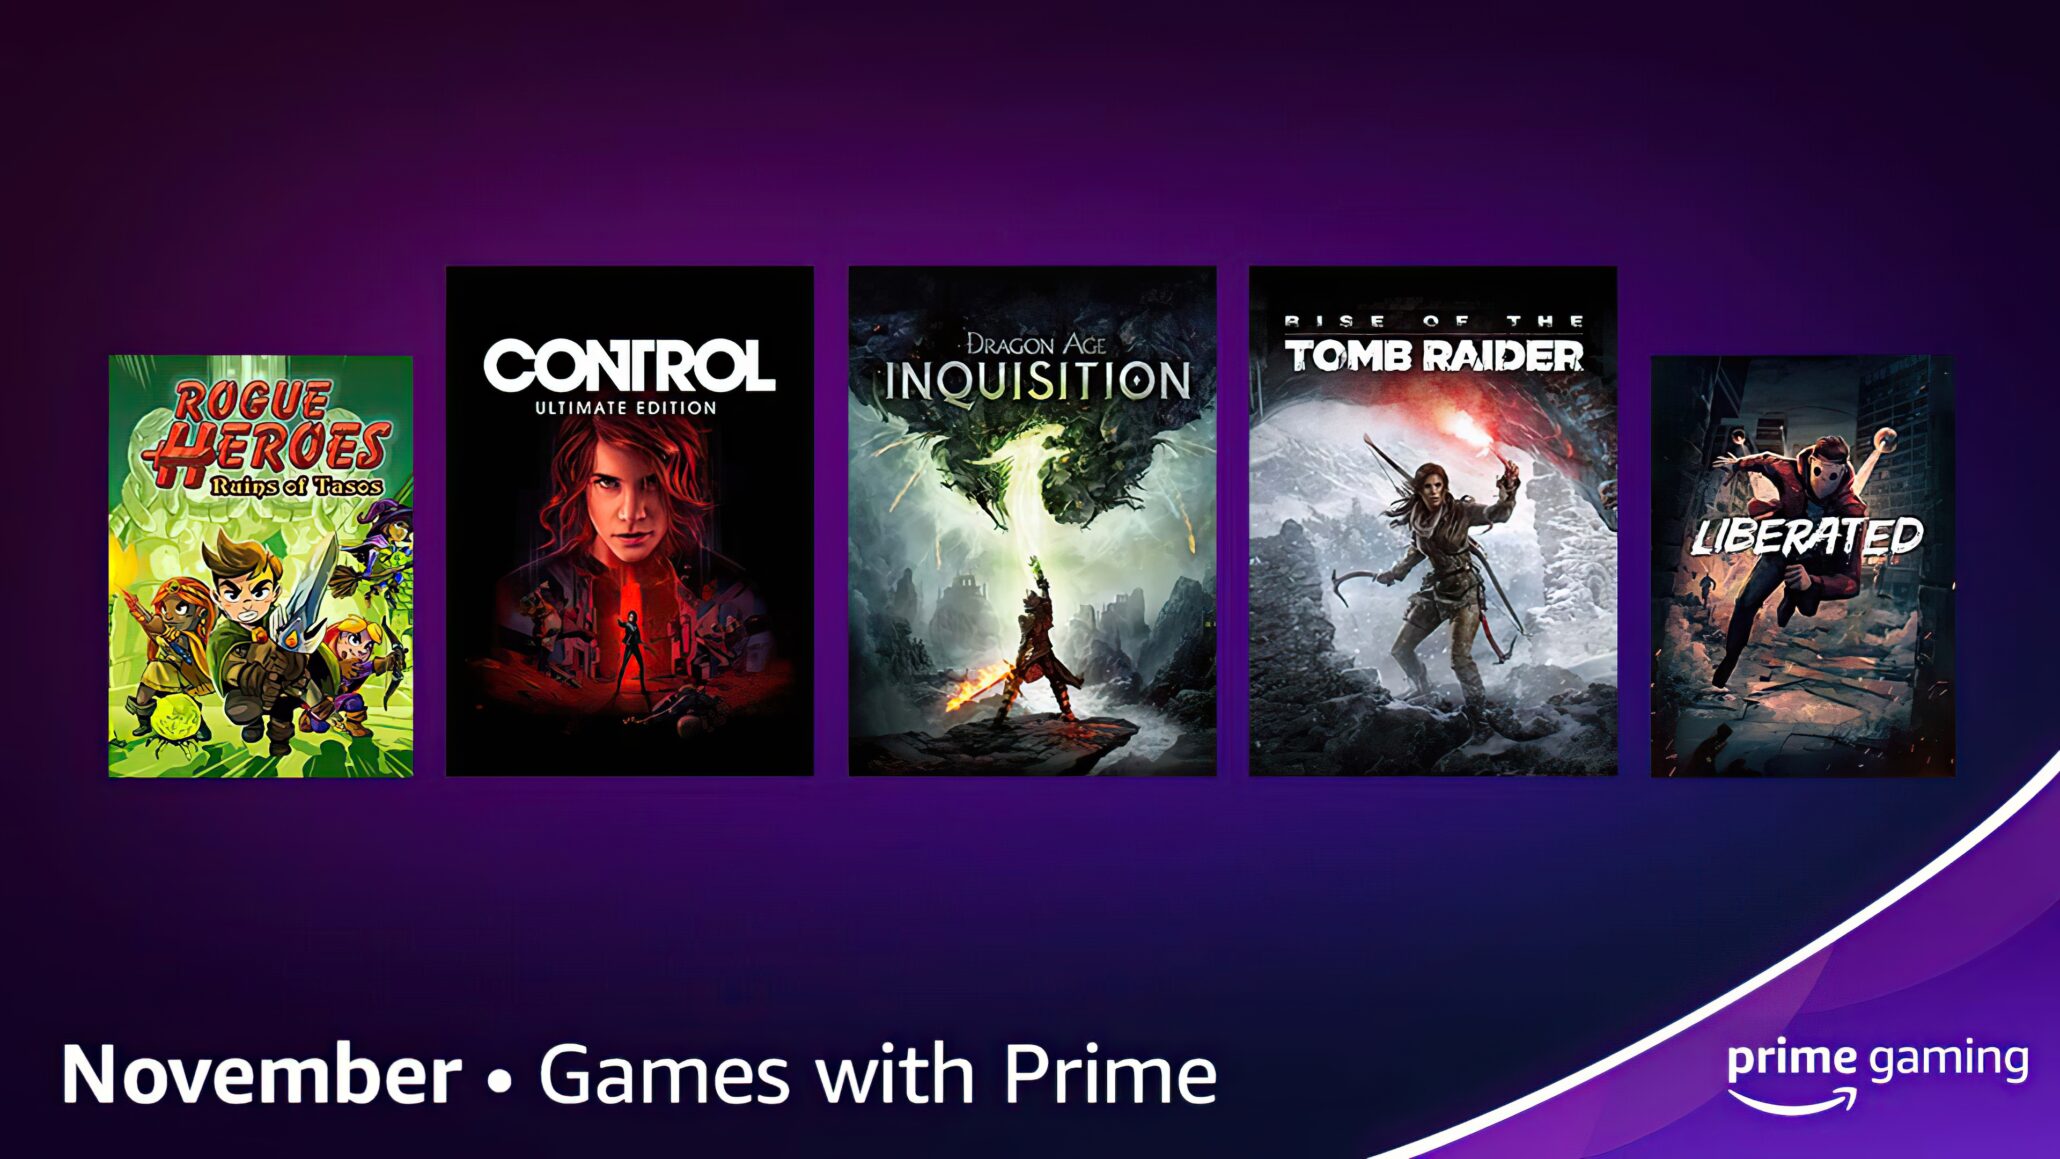 Prime Gaming ücretsiz oyunları neler?  Prime Gaming